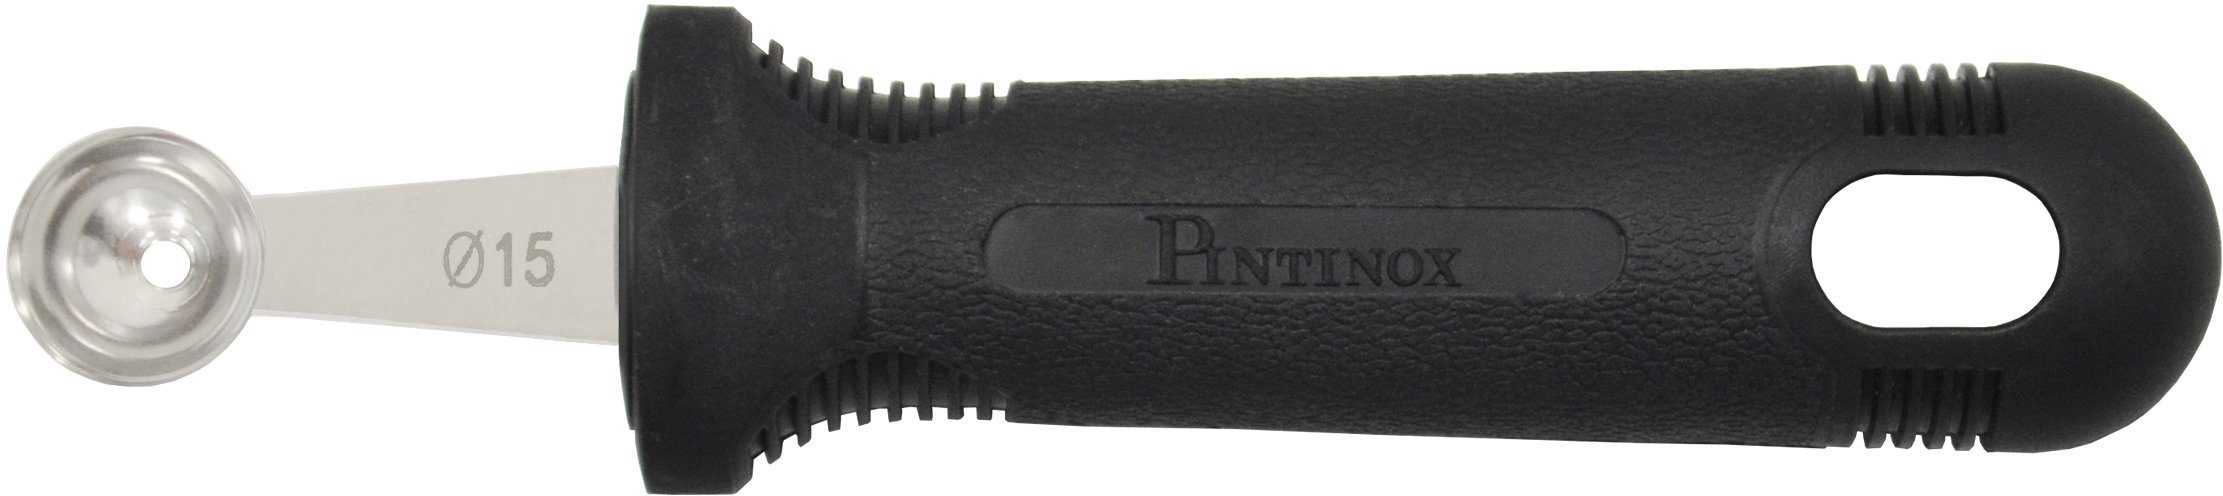 PINTINOX Kugelausstecher Professional, Melonenausstecher Set (1, 1,5, 2,2 cm),  Edelstahl